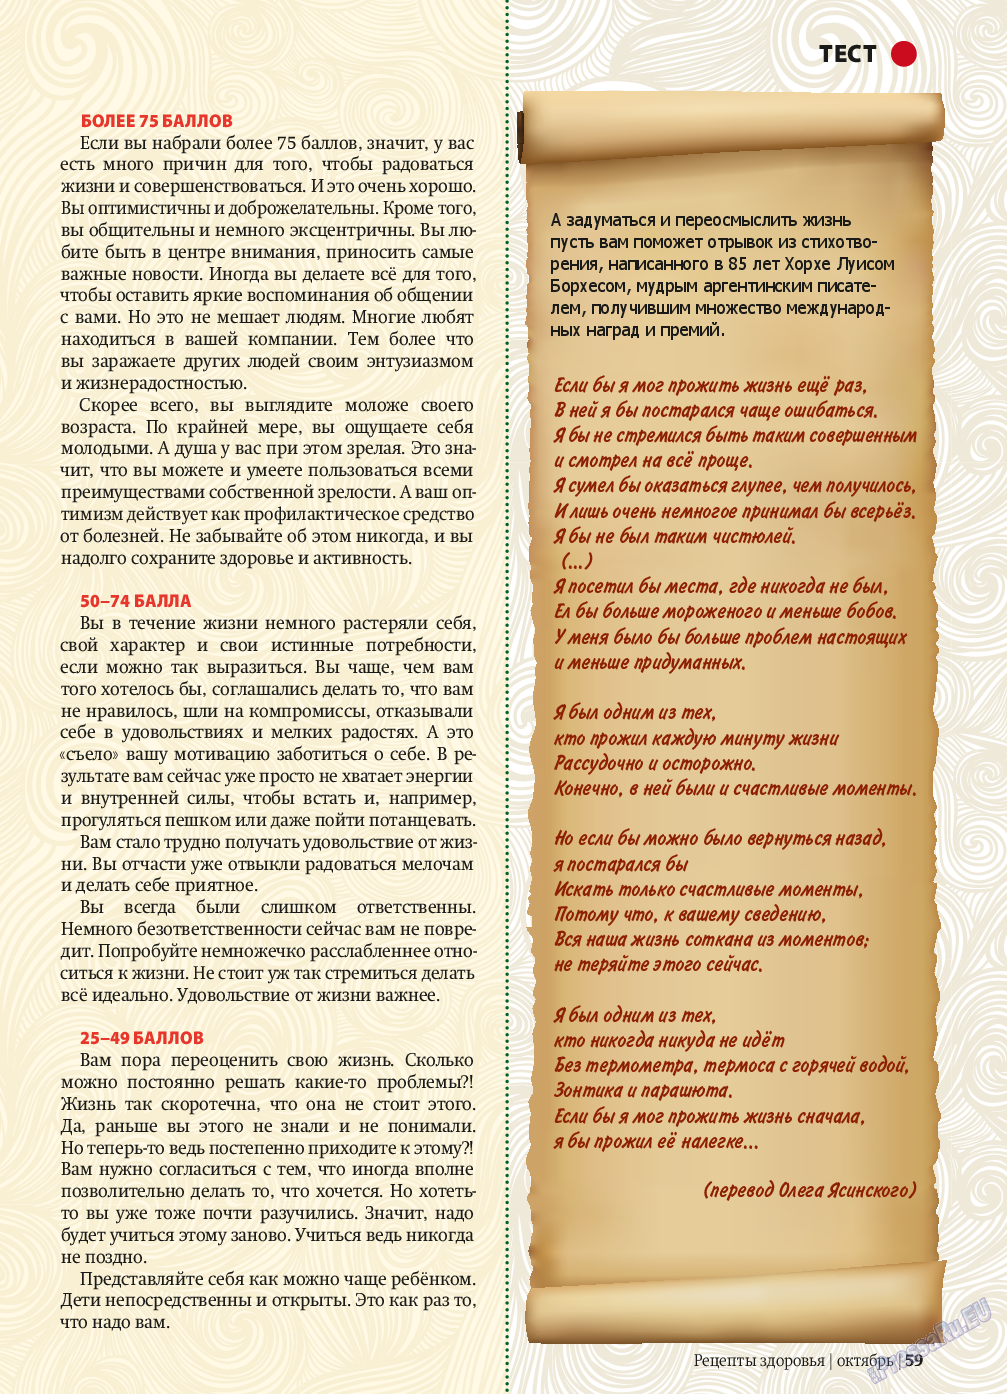 Рецепты здоровья, журнал. 2013 №10 стр.59